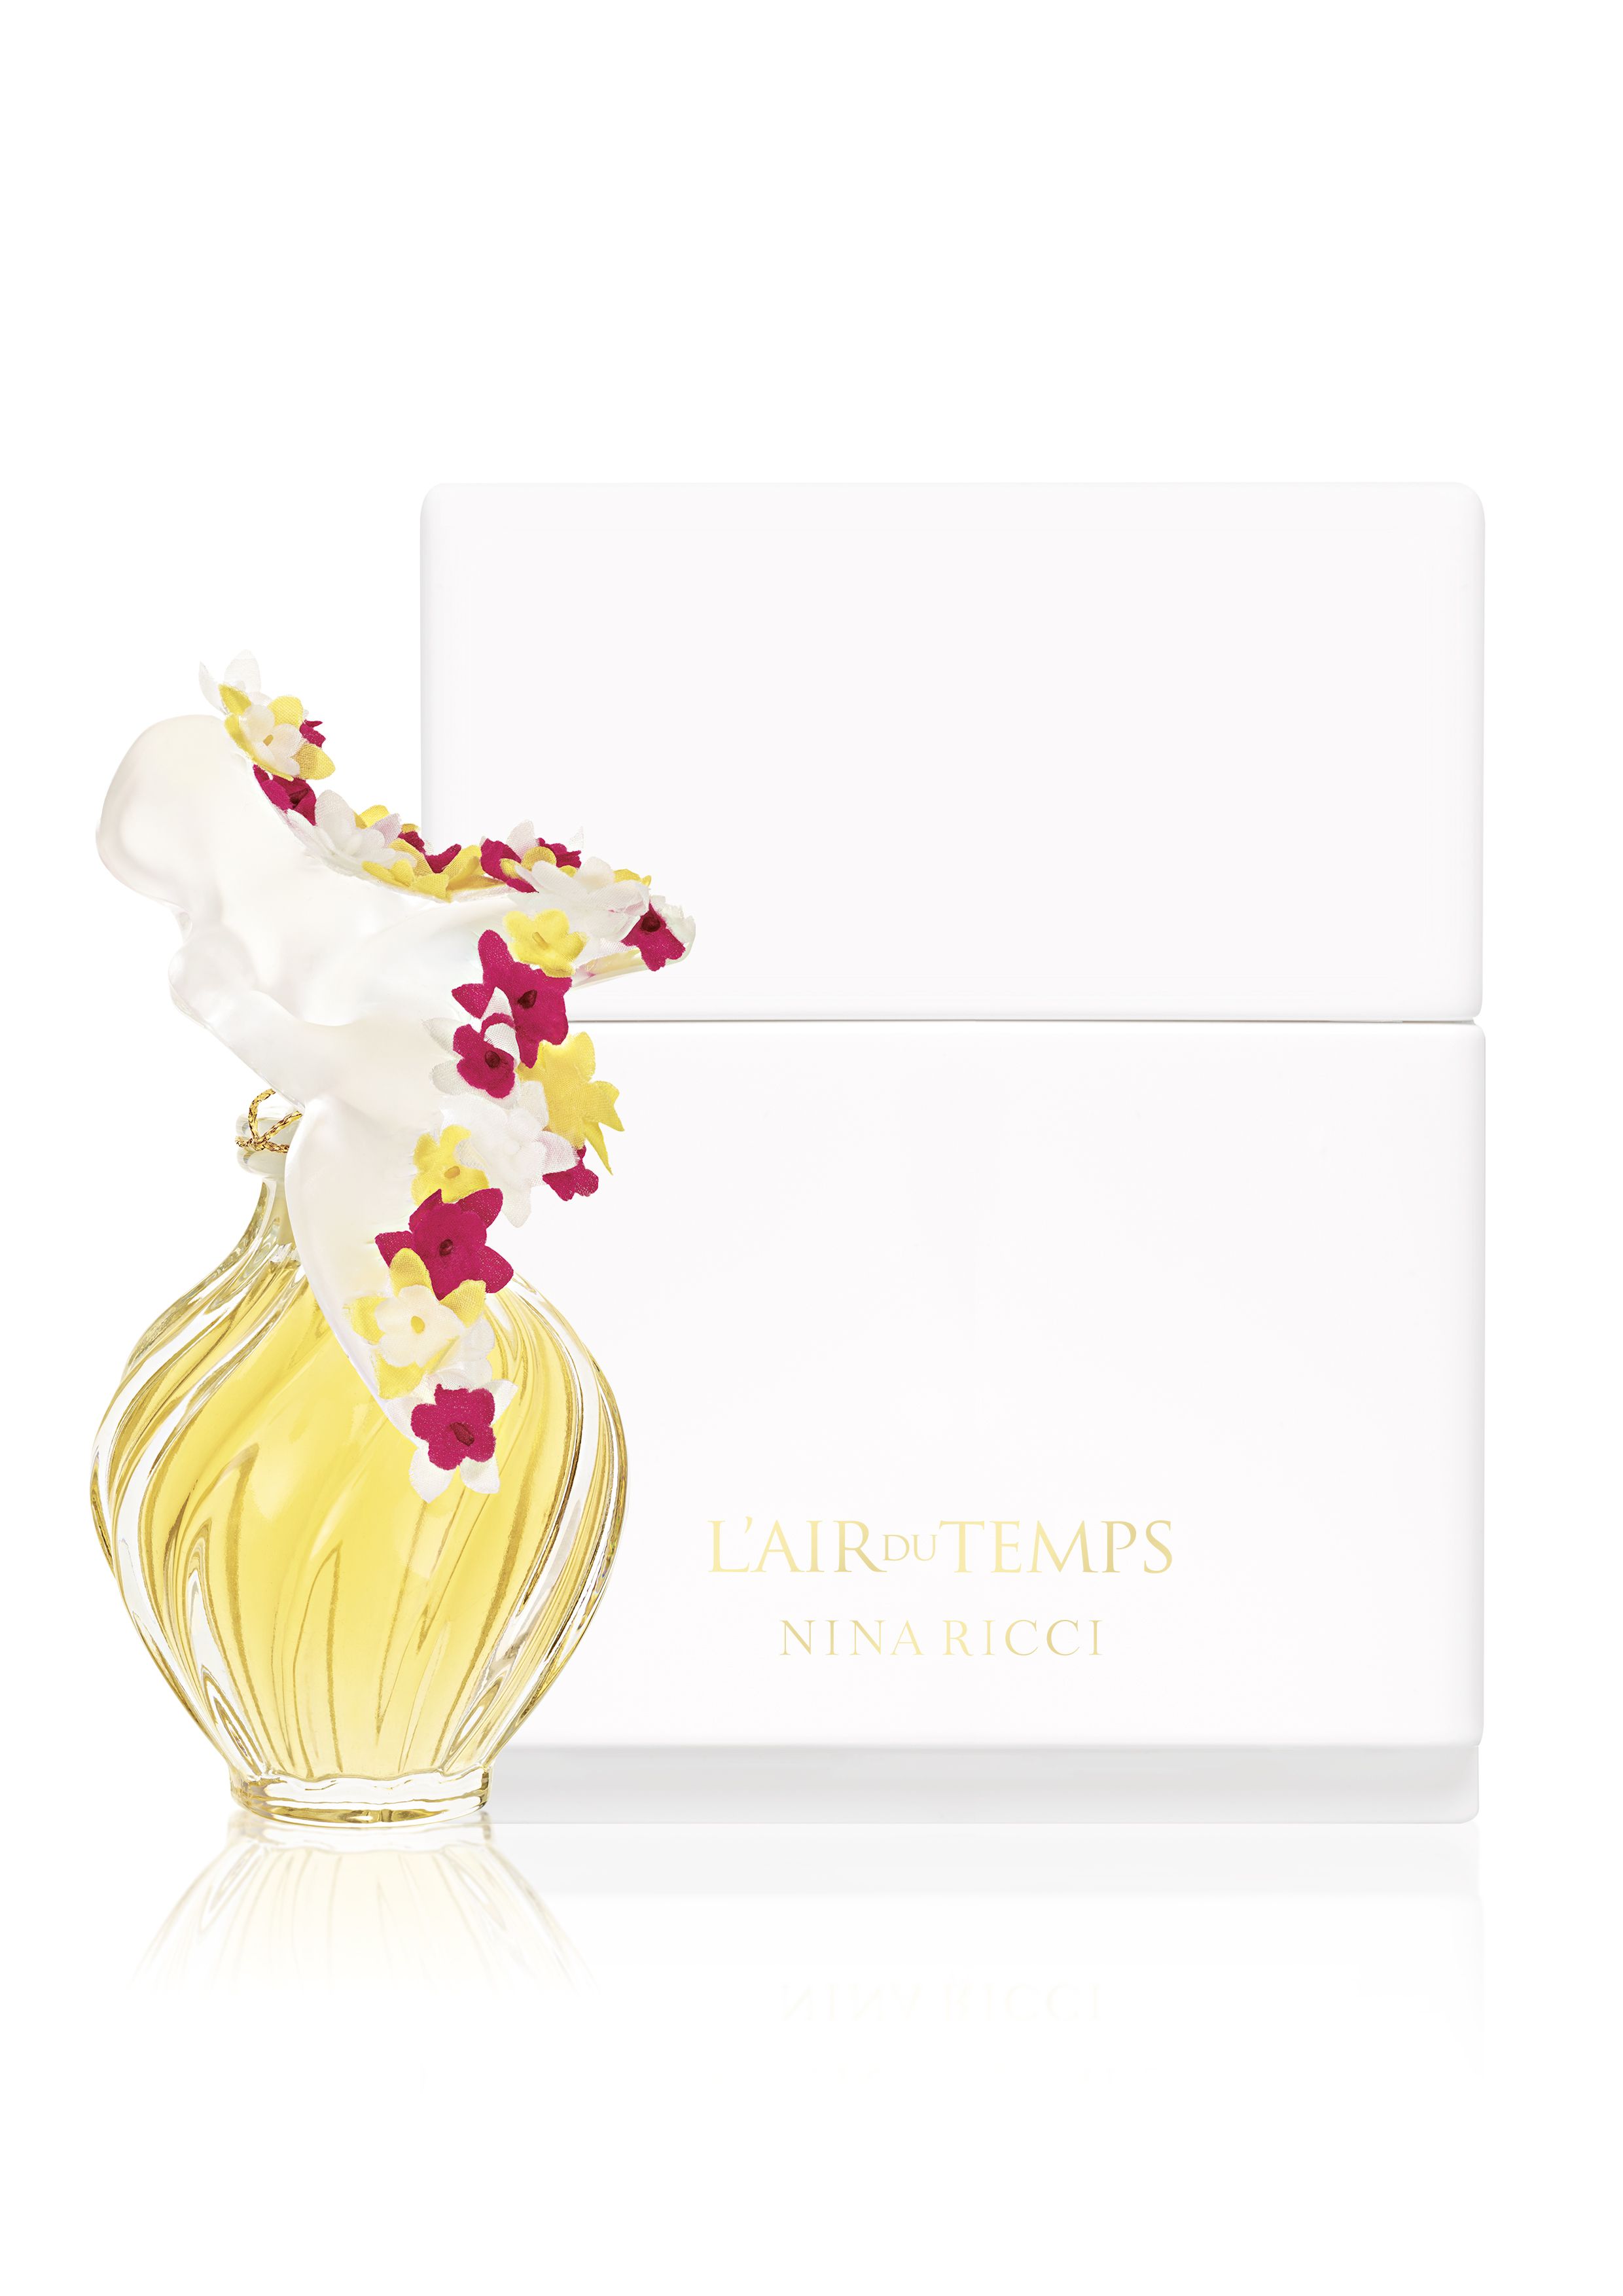 Духи времени отзывы. Lalique Nina Ricci l’Air du Temps. Nina Ricci l'Air du Temps флакон Лалик. Духи Nina Ricci l'Air du Temps.